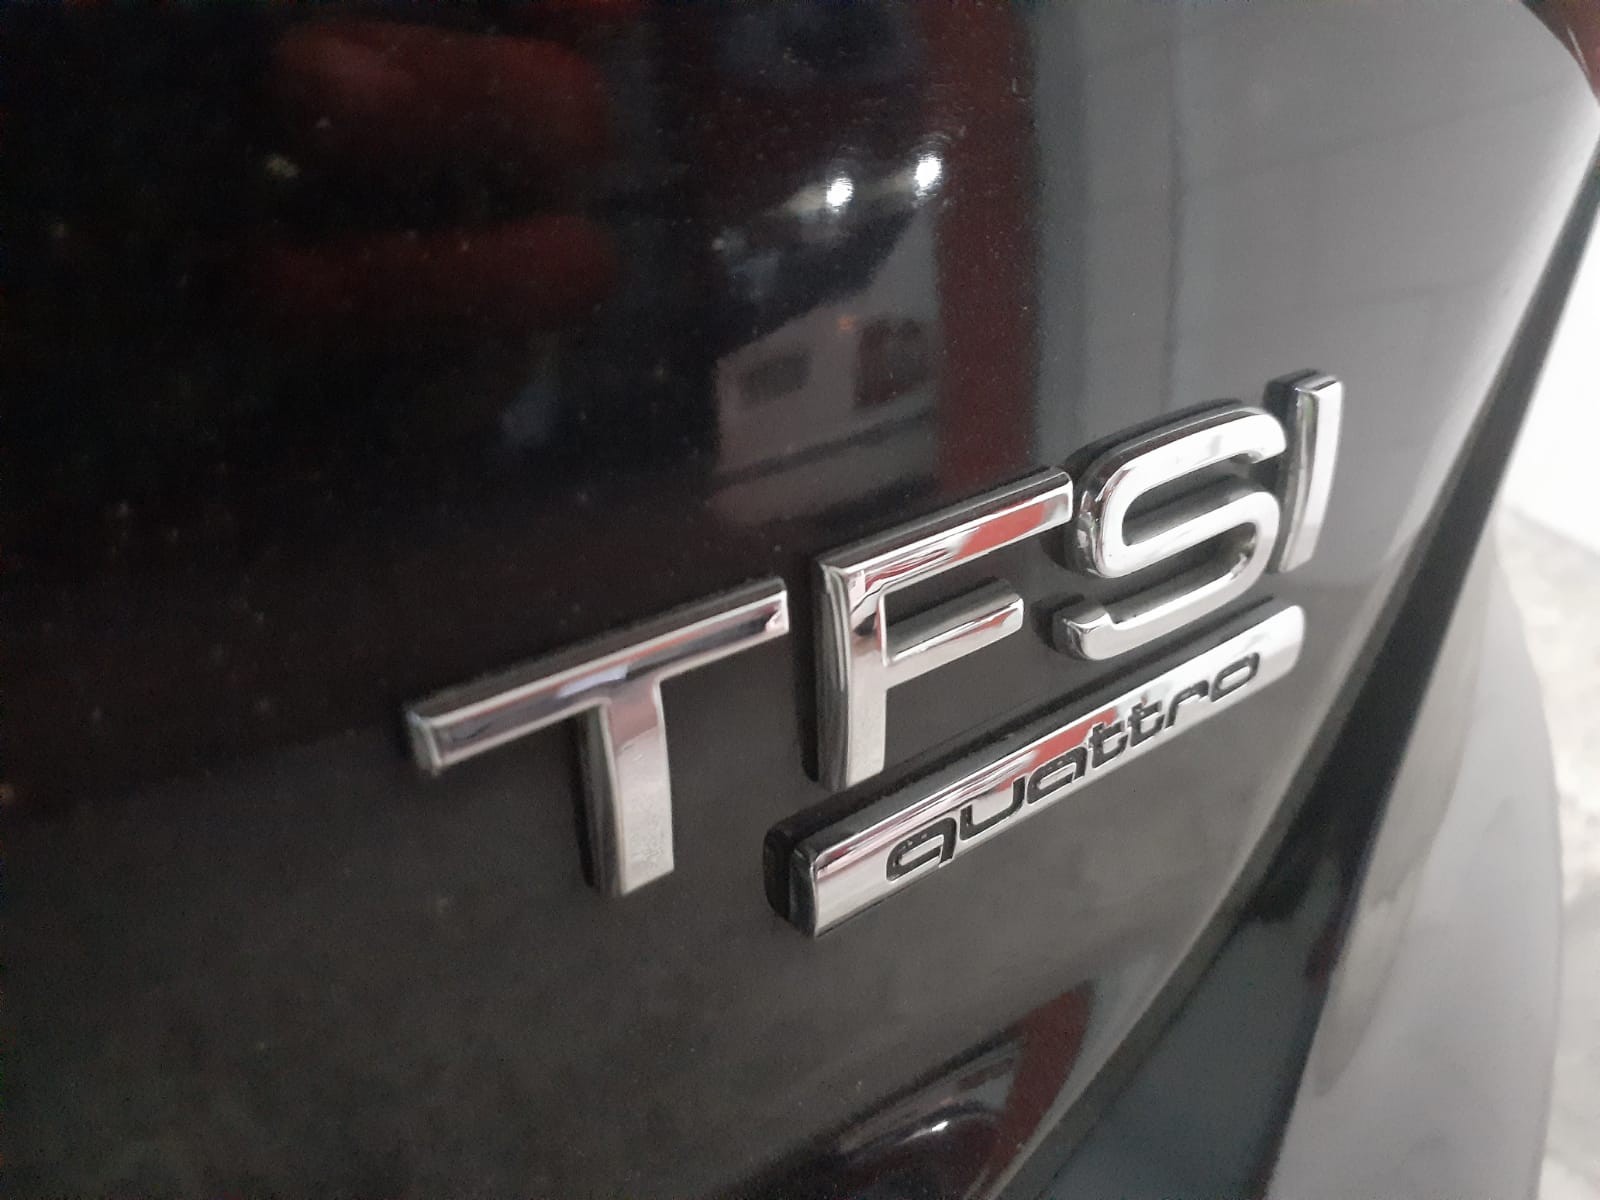 Audi A5 Sportback 2.0 TFSI - AEB DI60